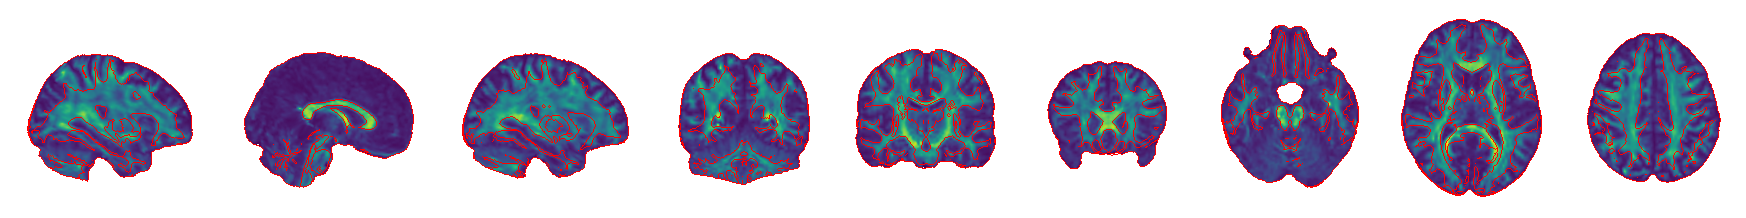 FA with MNI_1mm brain image segmentation